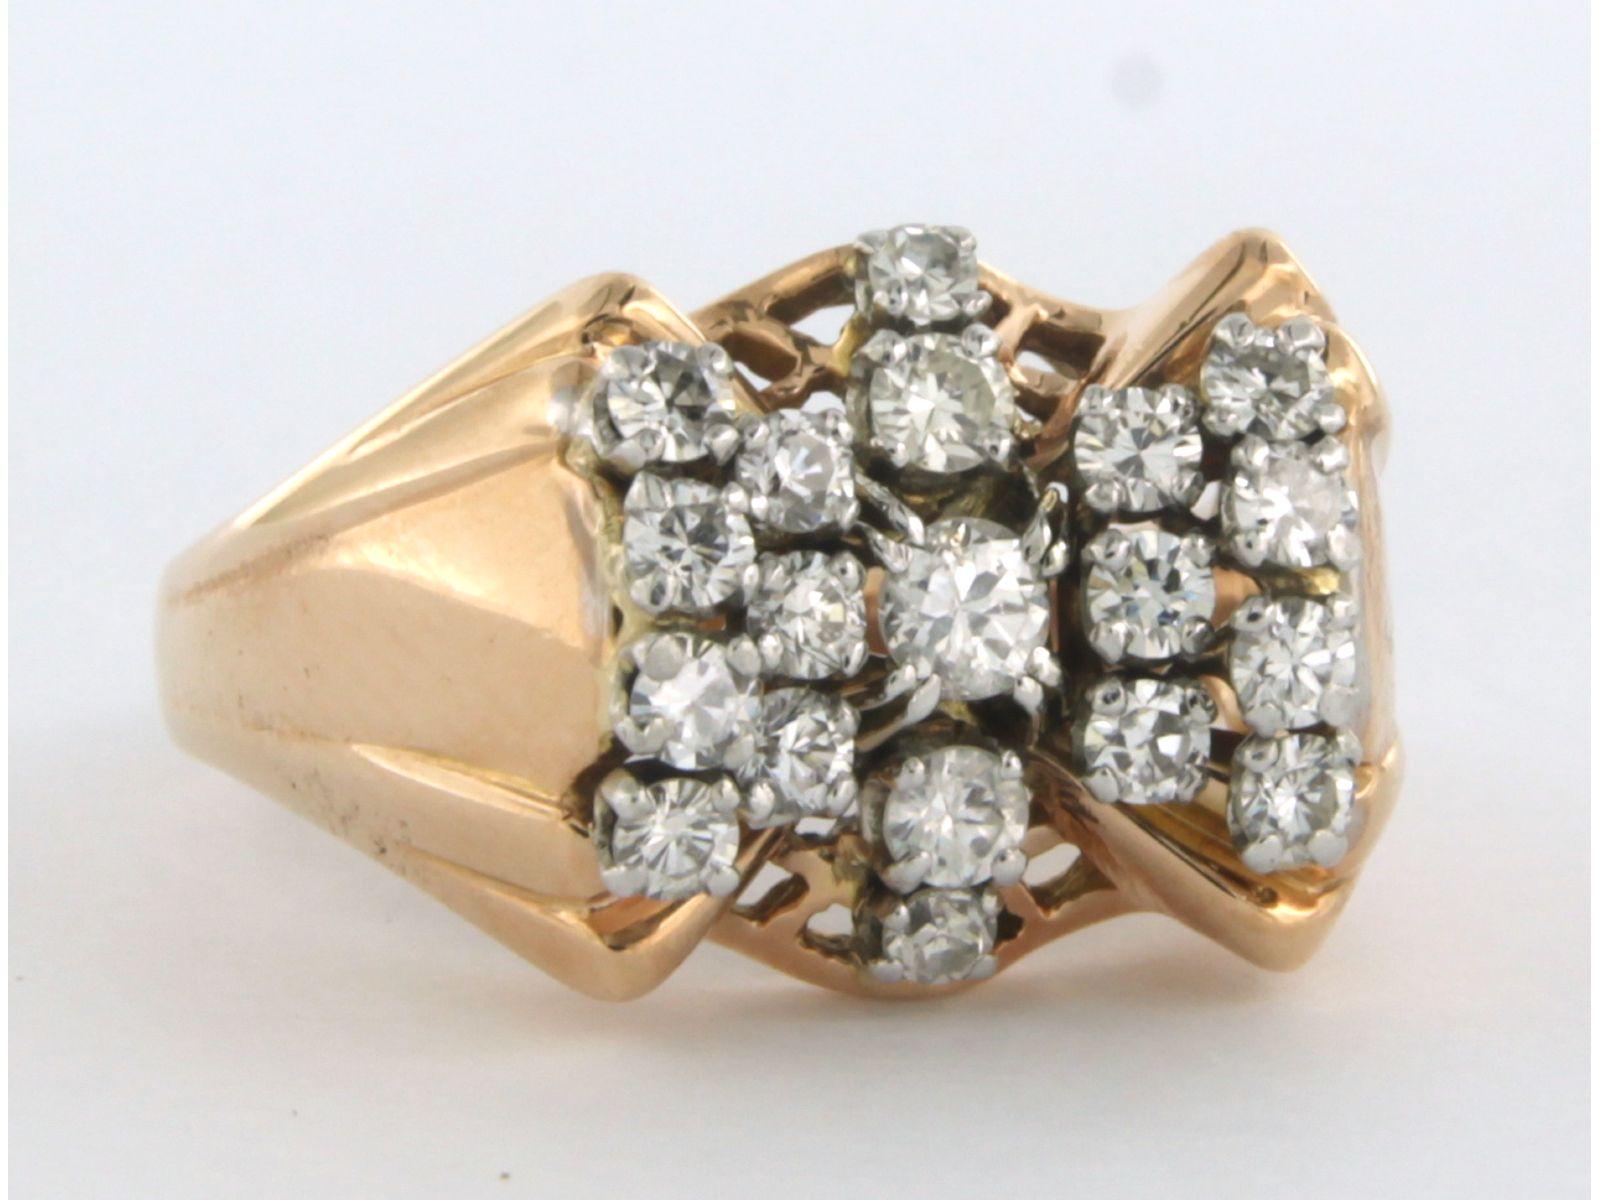 Ring aus 18 kt Bicolor-Gold, besetzt mit Diamanten im Brillantschliff. 0,86 ct - F/G - VS/SI - Ringgröße U.S. 7.5  - EU. 17.75(56)

die Vorderseite des Rings ist 1,3 cm breit und 9,0 mm hoch

Ringgröße U.S. 7.5  - EU. 17,75(56), der Ring kann